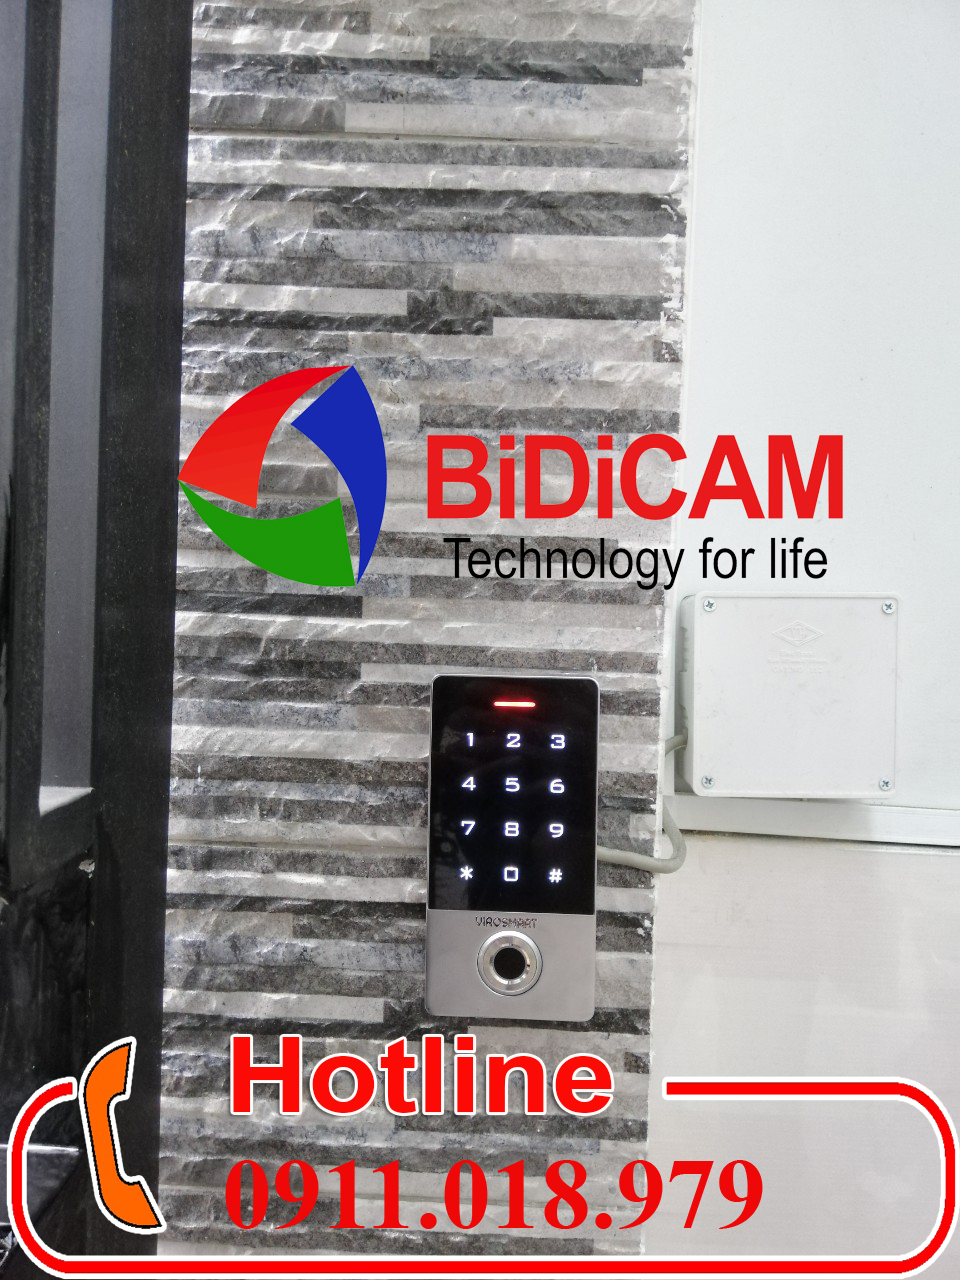 bidicam0282828